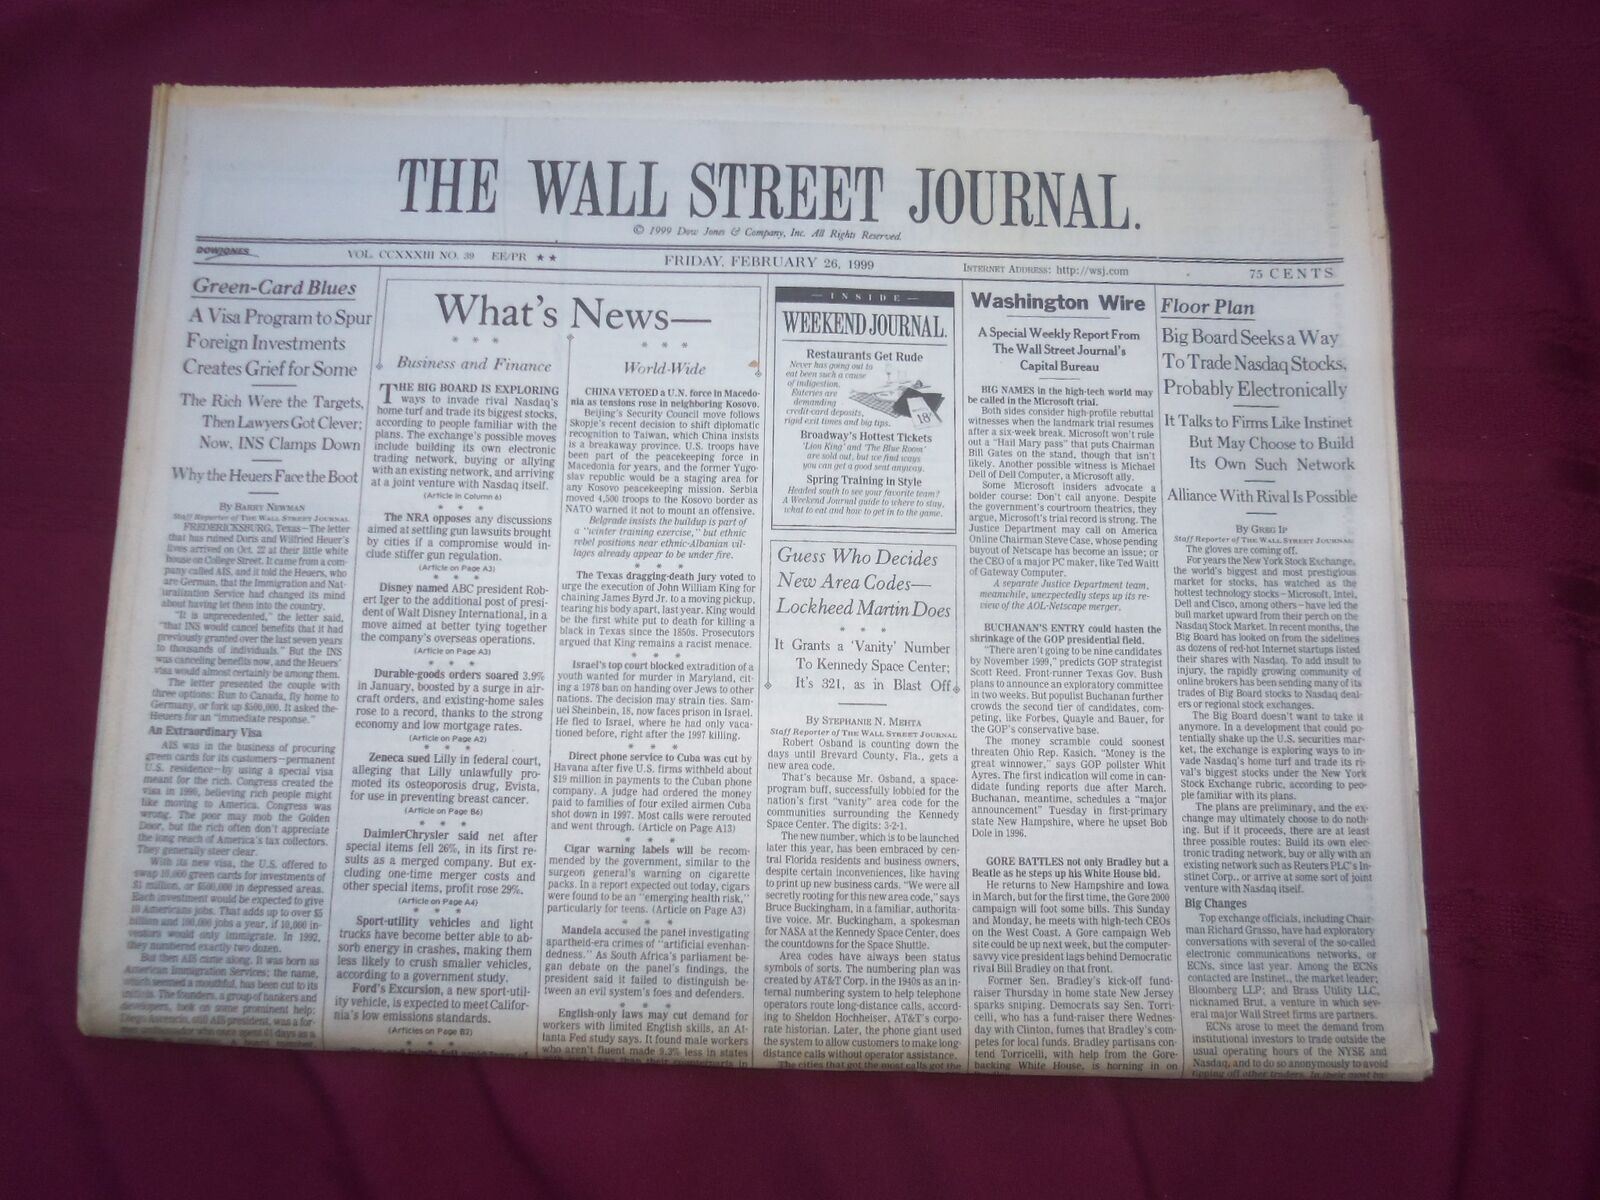 1999 FEB 26 THE WALL STREET JOURNAL - BIG BOARD TO TRADE NASDAQ STOCKS - WJ 26